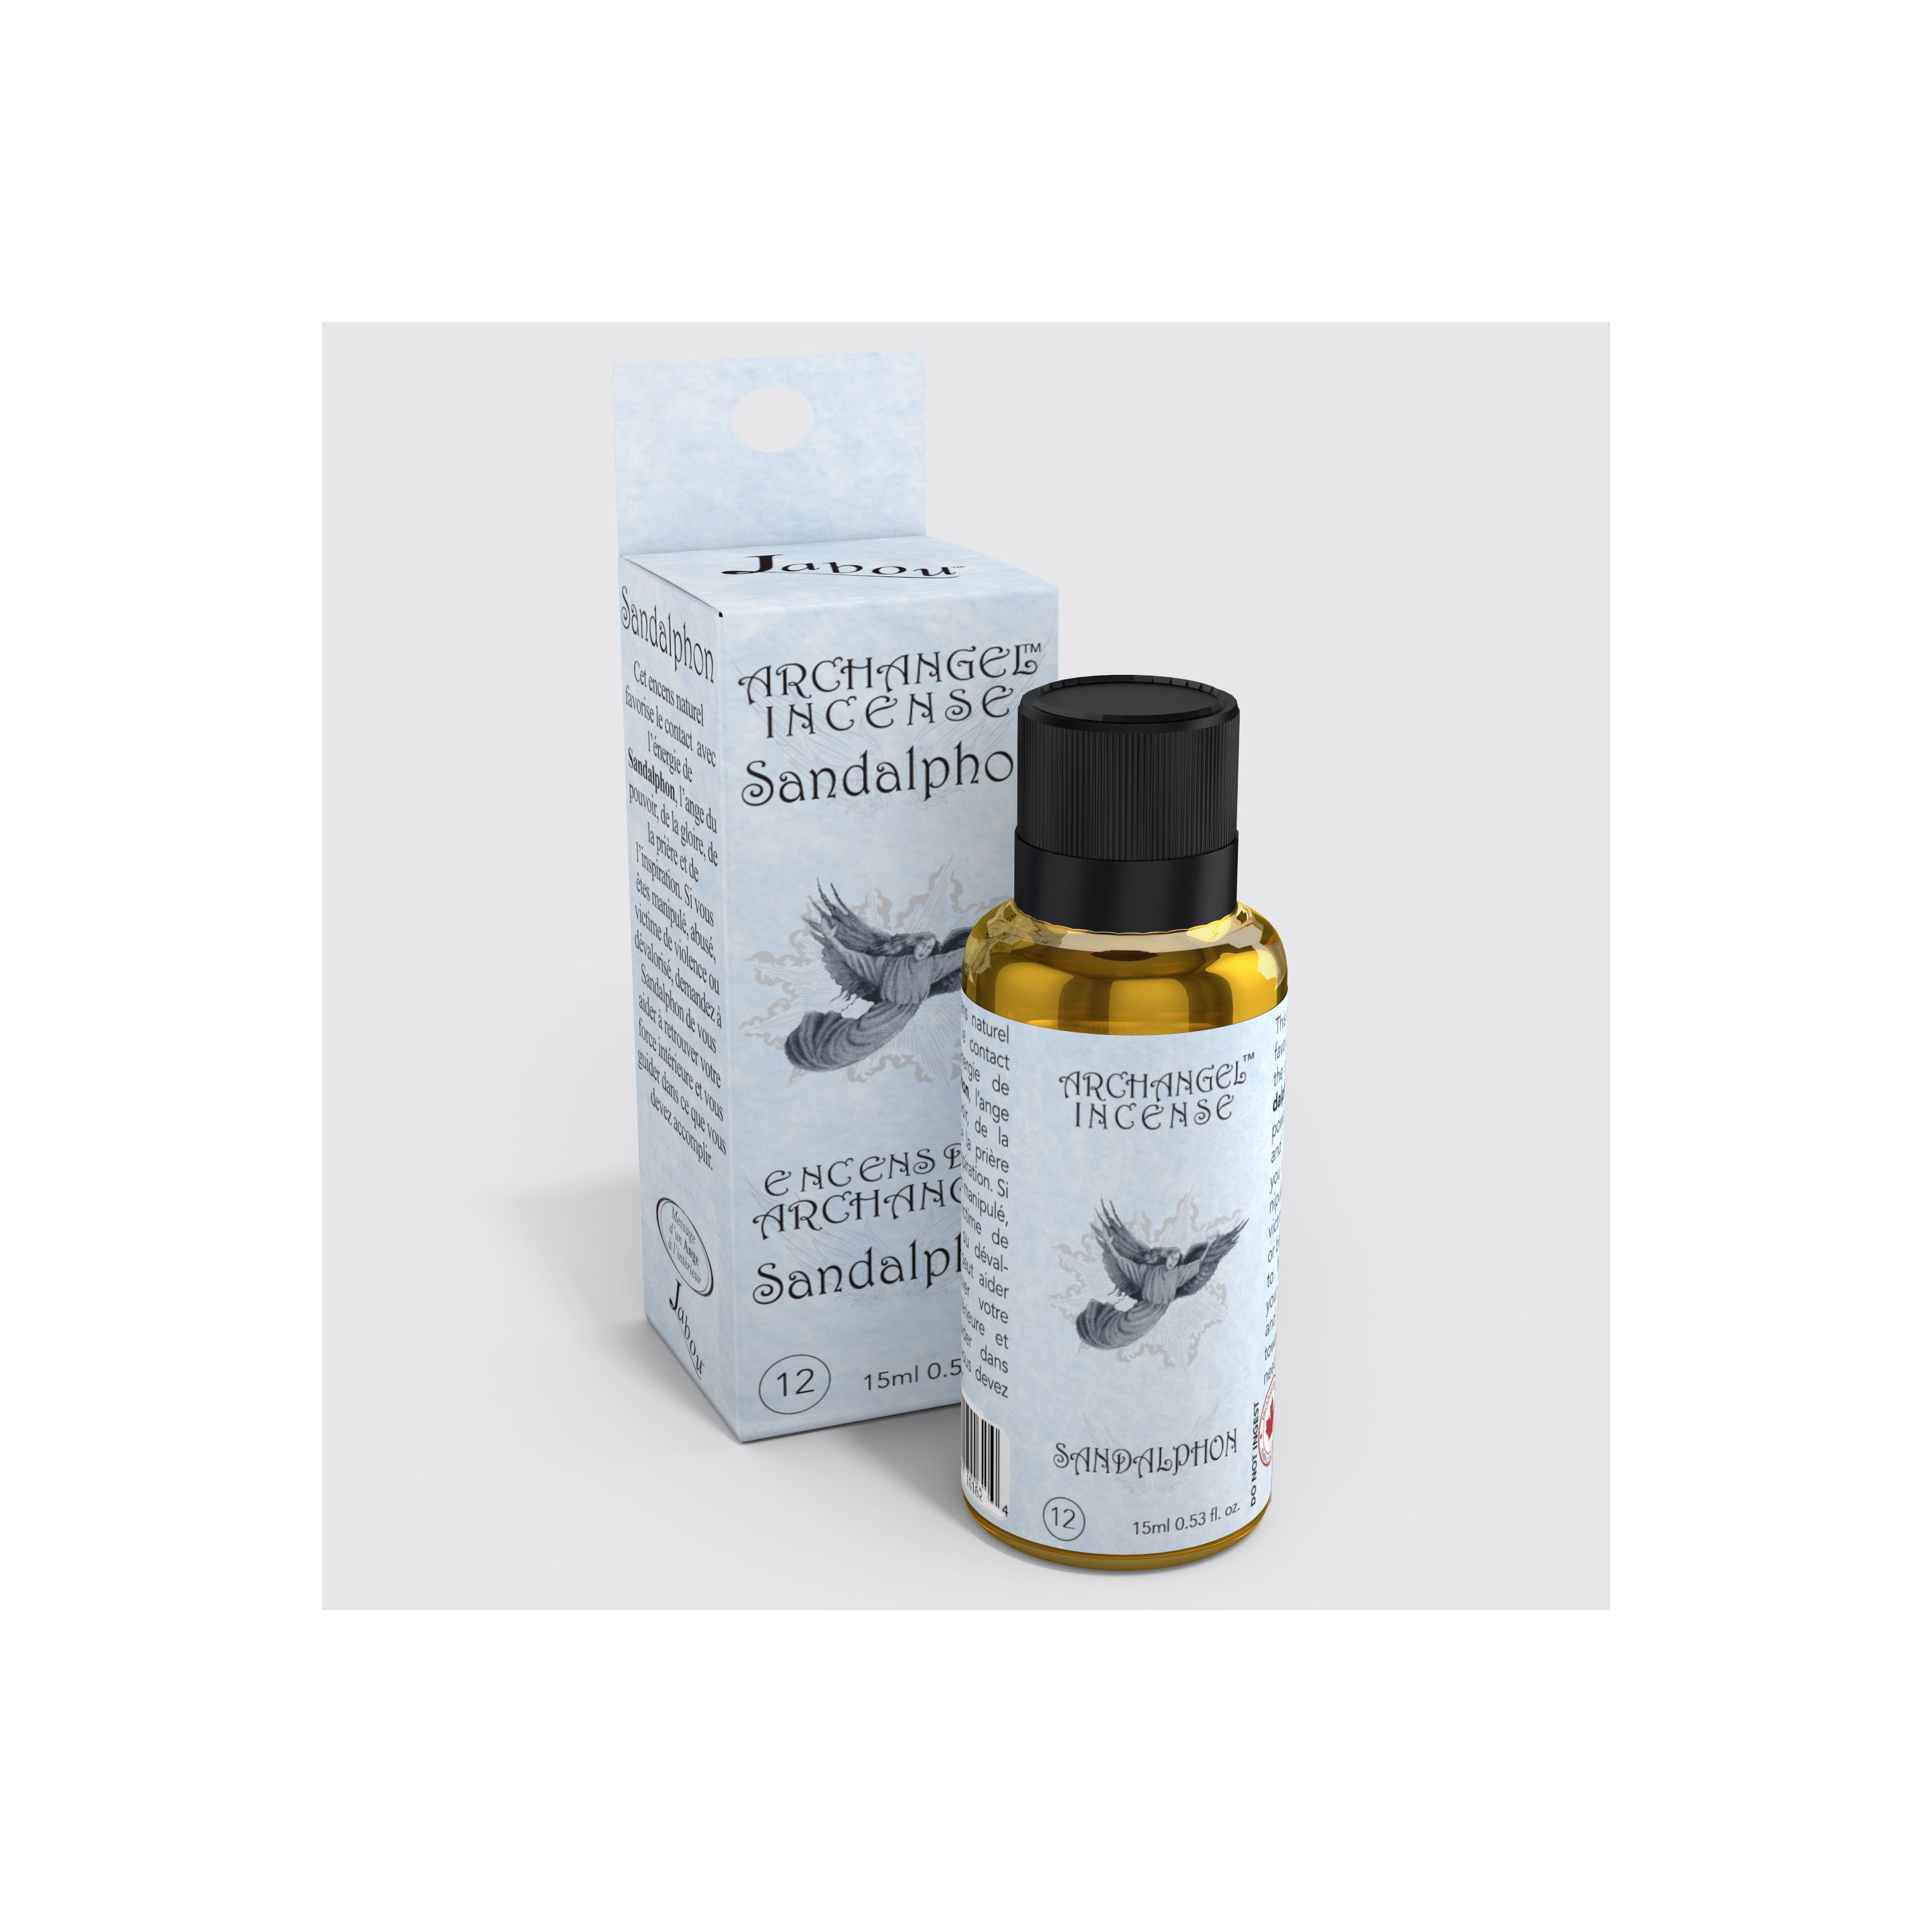 Jabou™ Archangel Incense™ #12 Sandalphon (Accomplishment) Oil